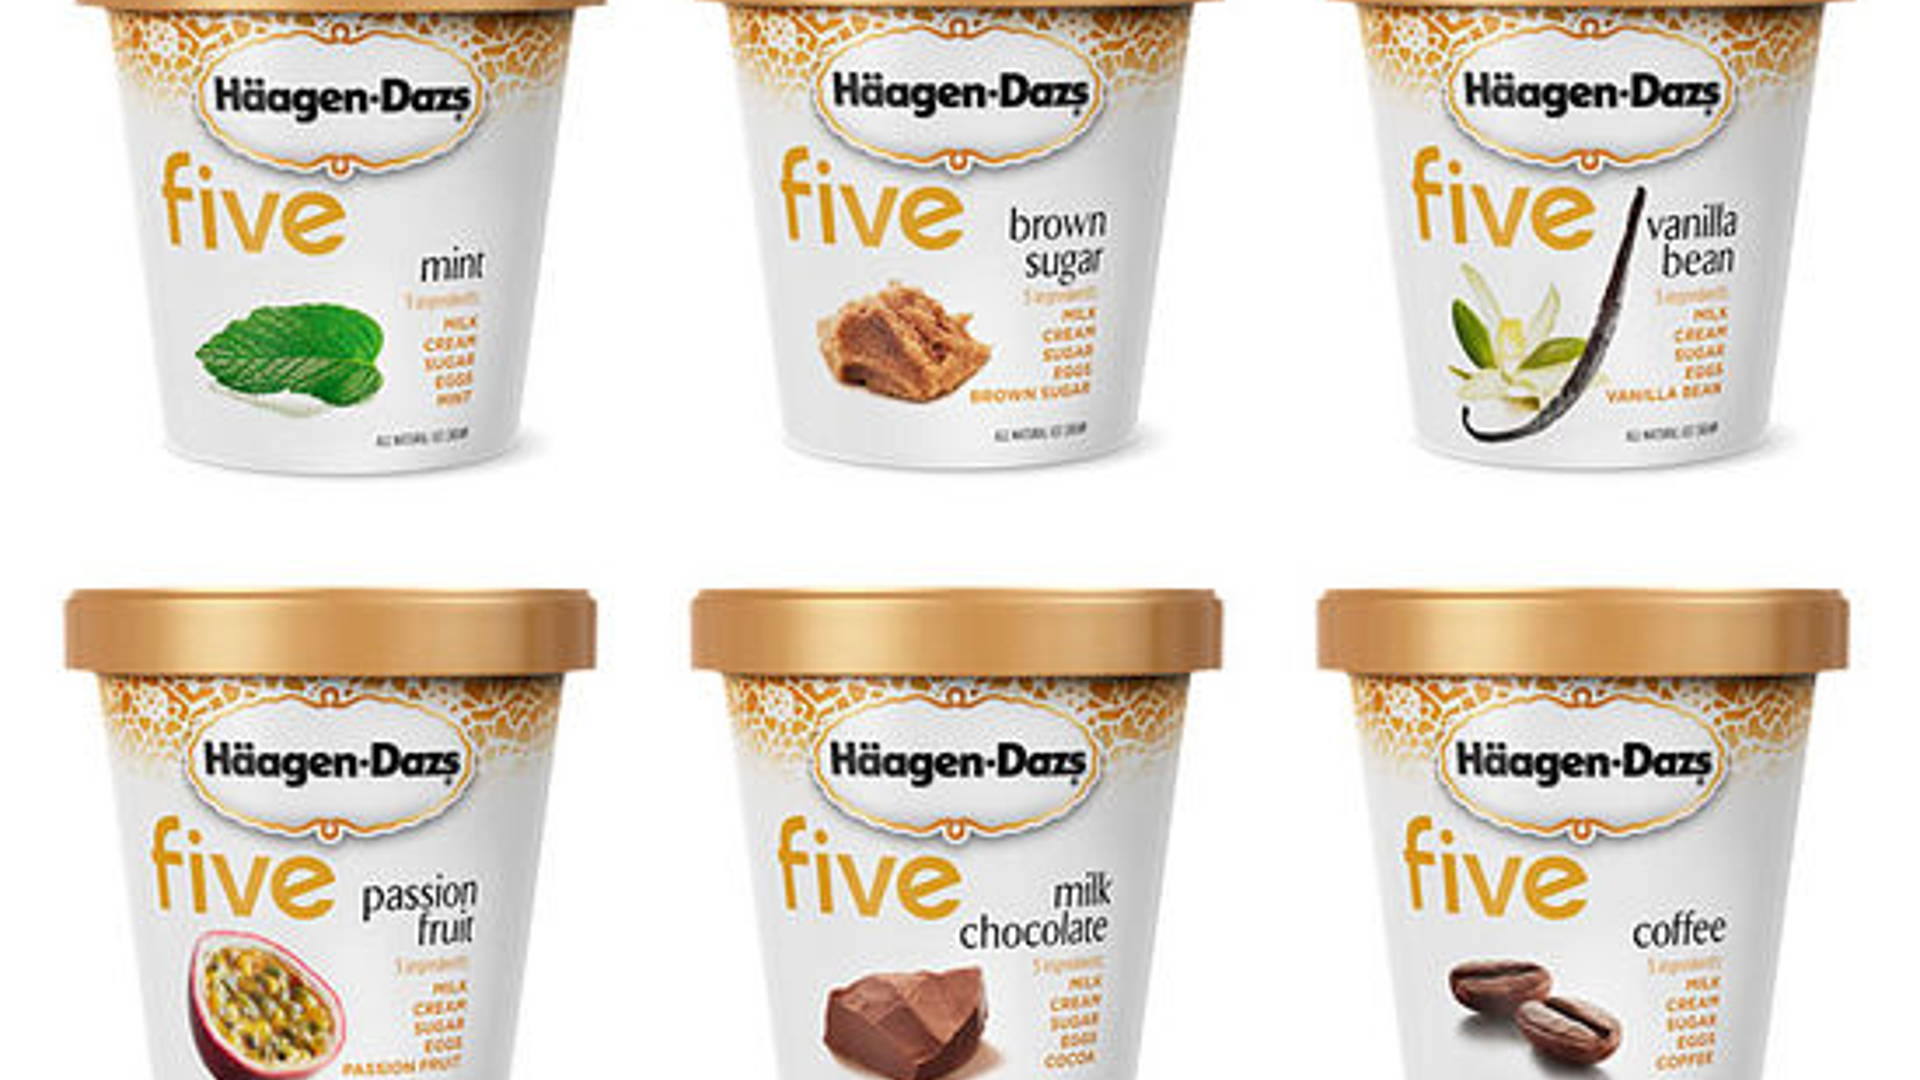 Häagen-Dazs five™ Ice Cream Dieline Packaging | Inspiration Branding & Design, 